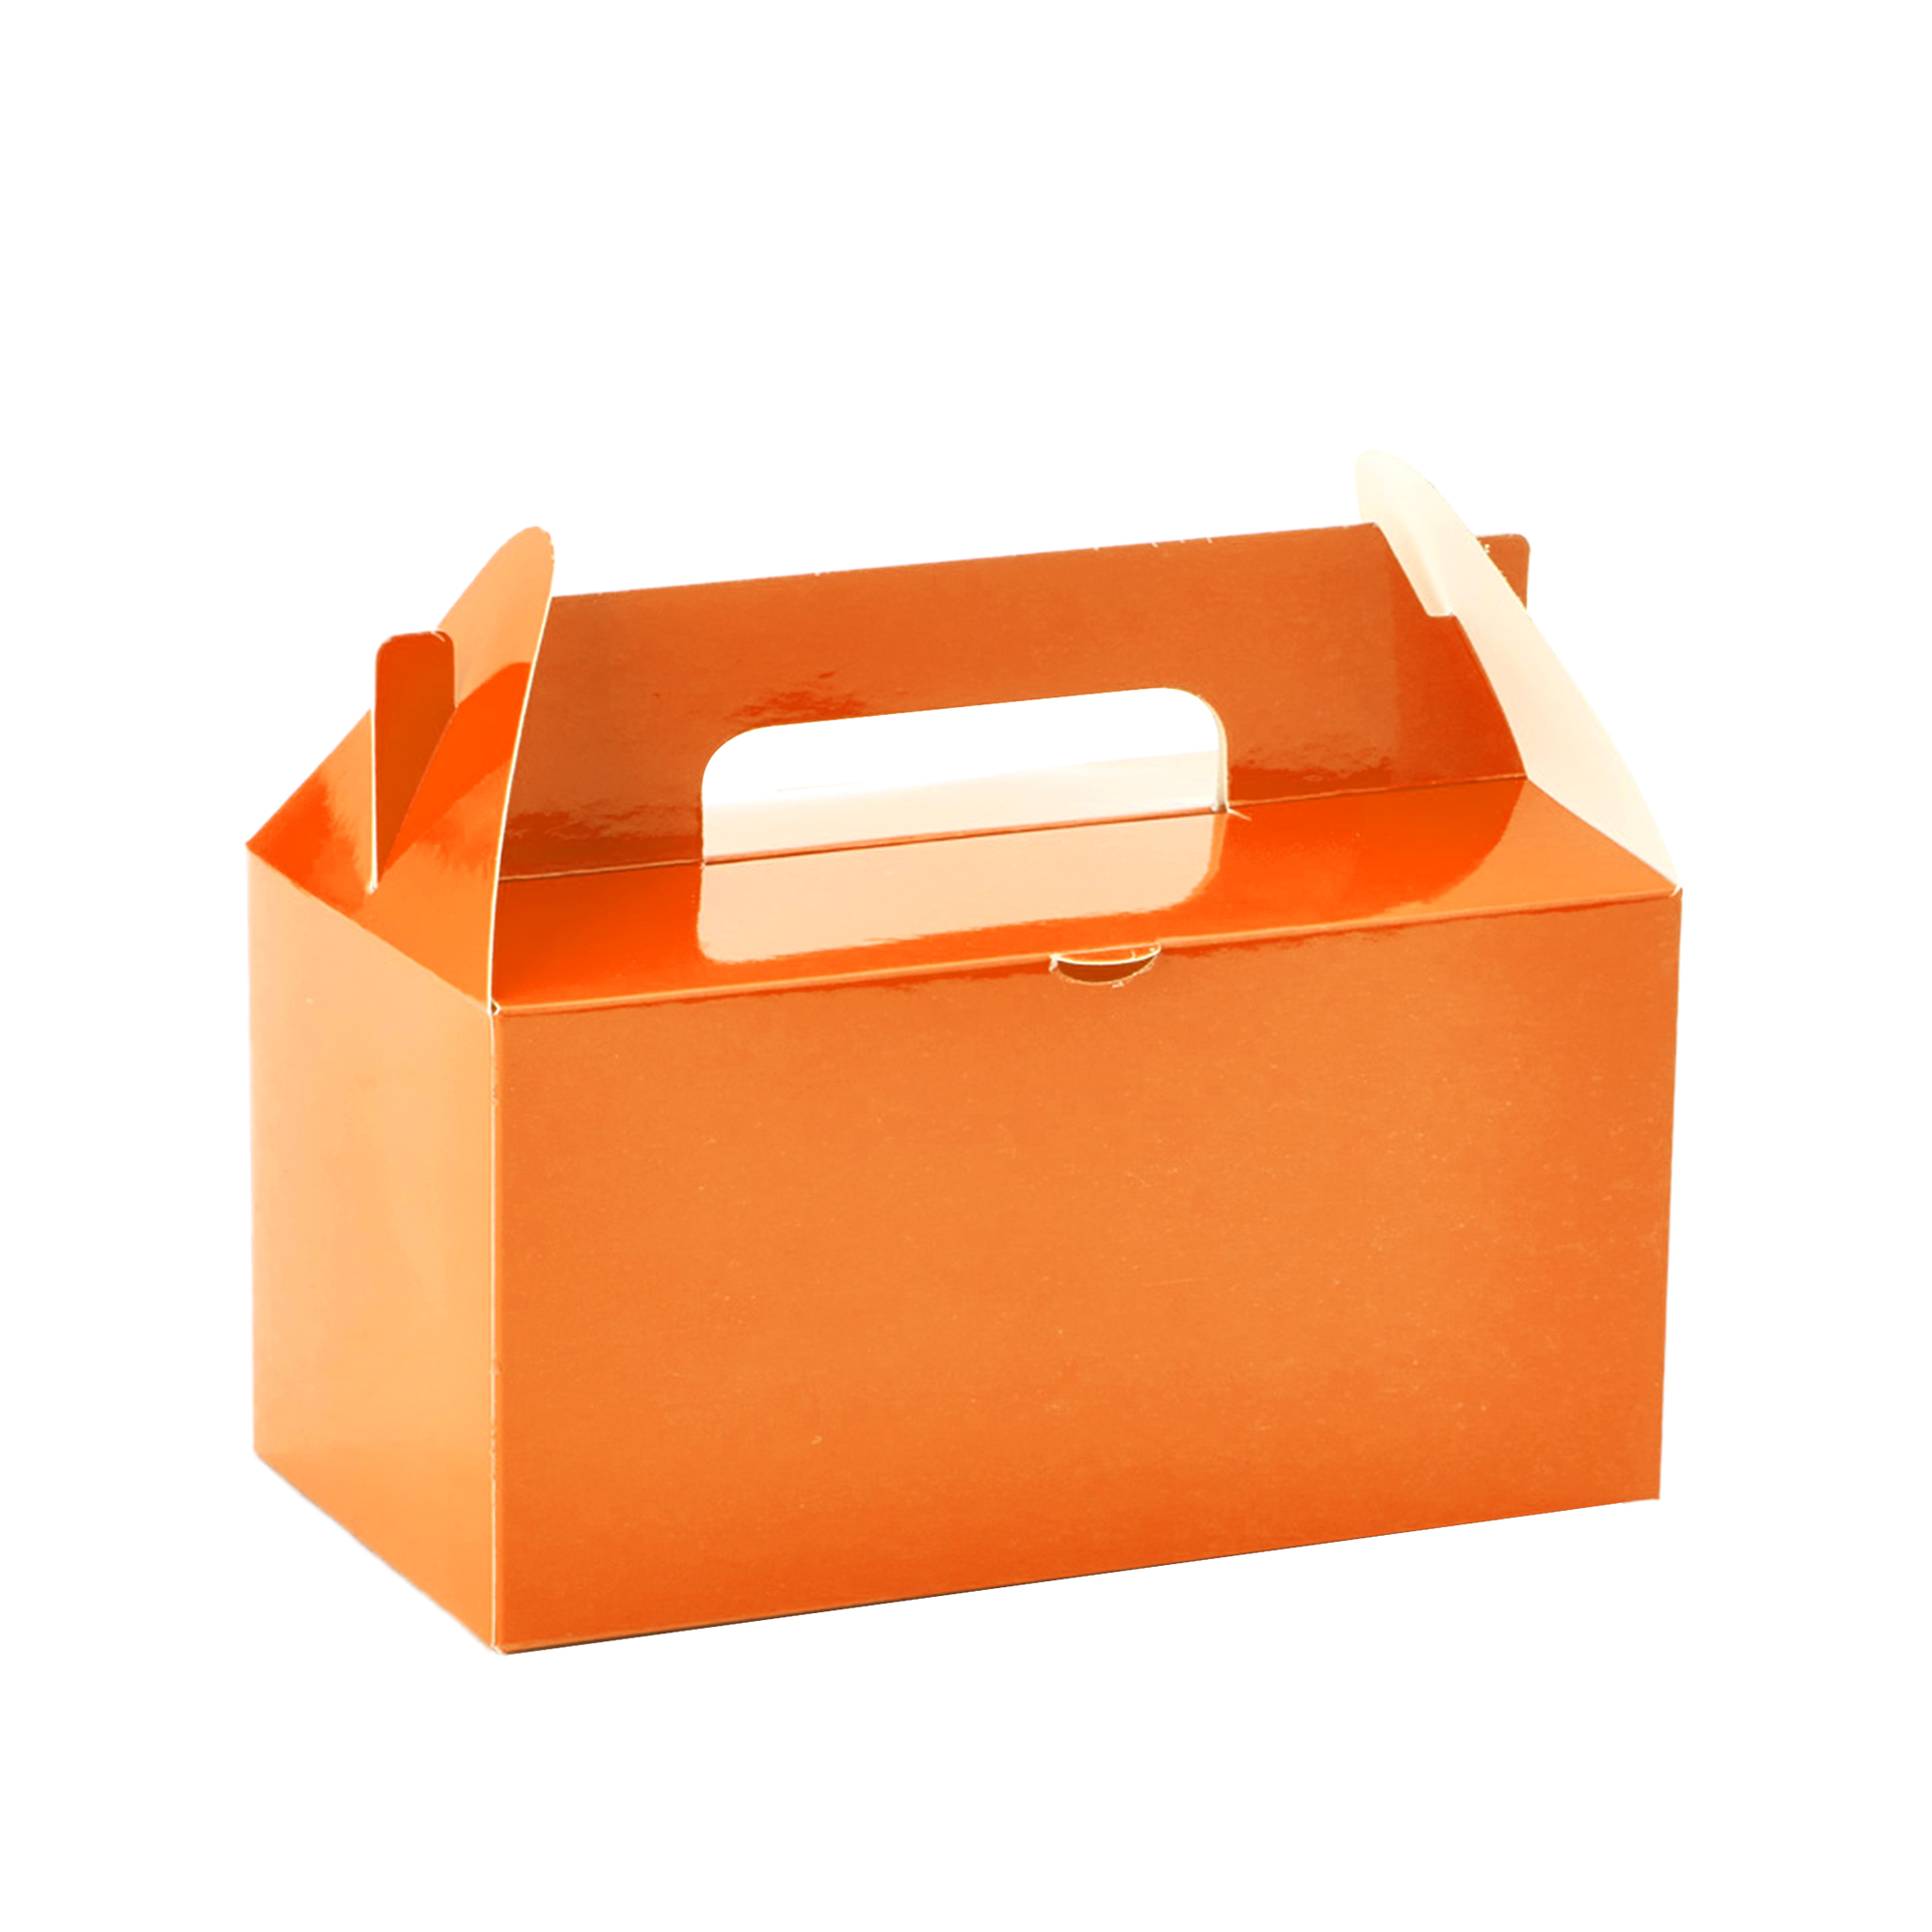 Takeout Box 12pcs/bag - Orange